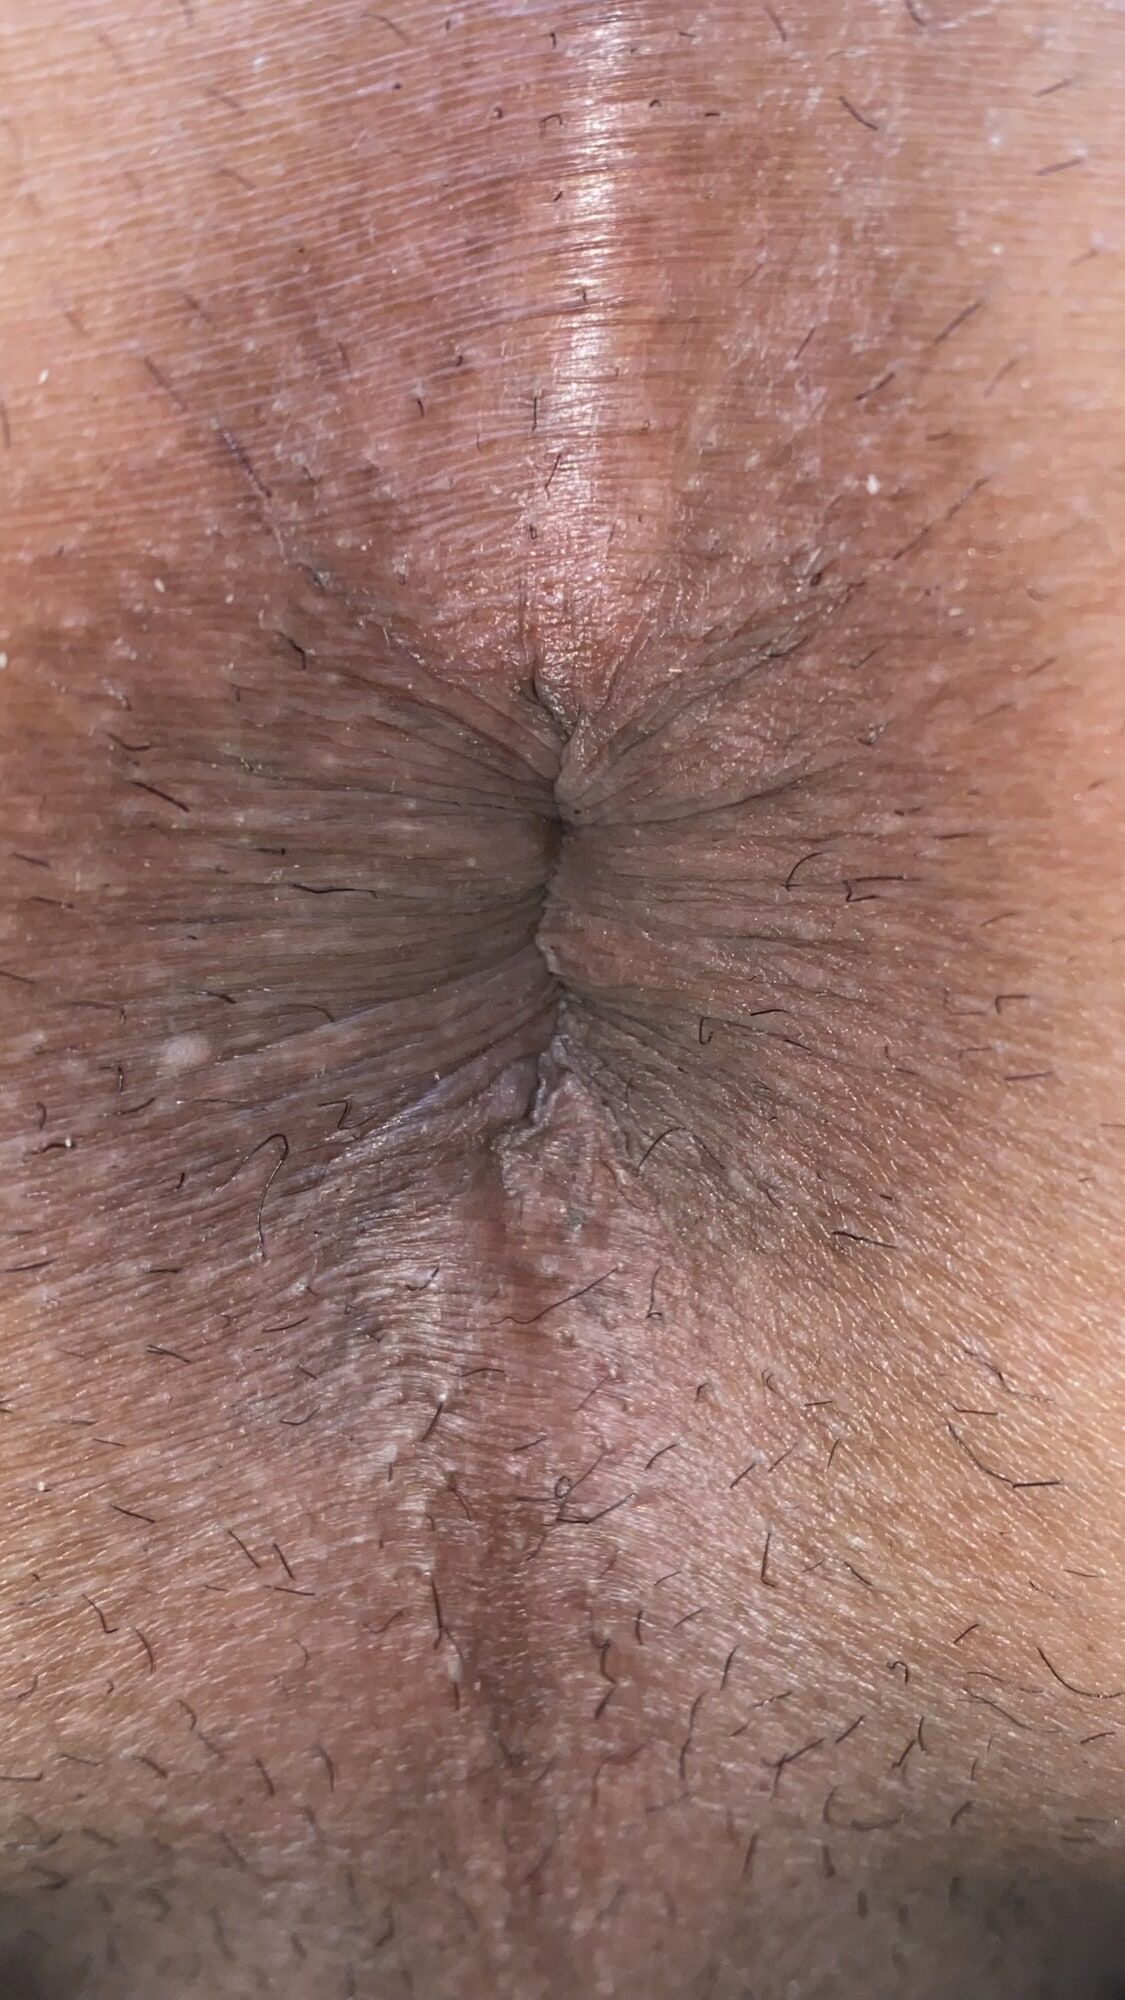 Close-up of a man's anus #11